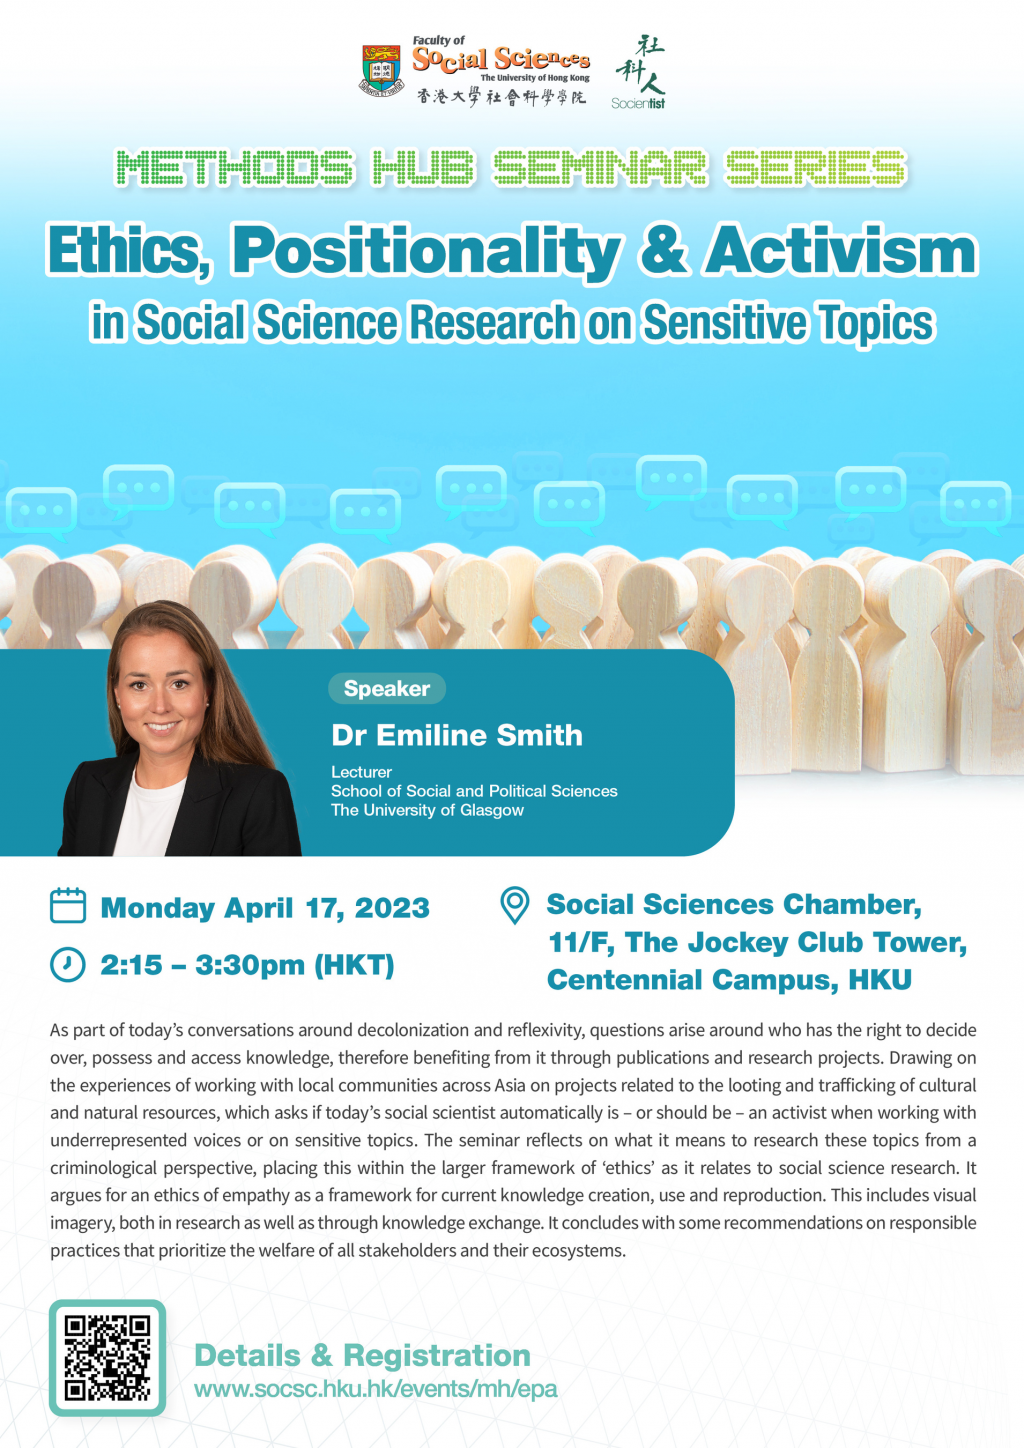 Ethics, Position & Activism